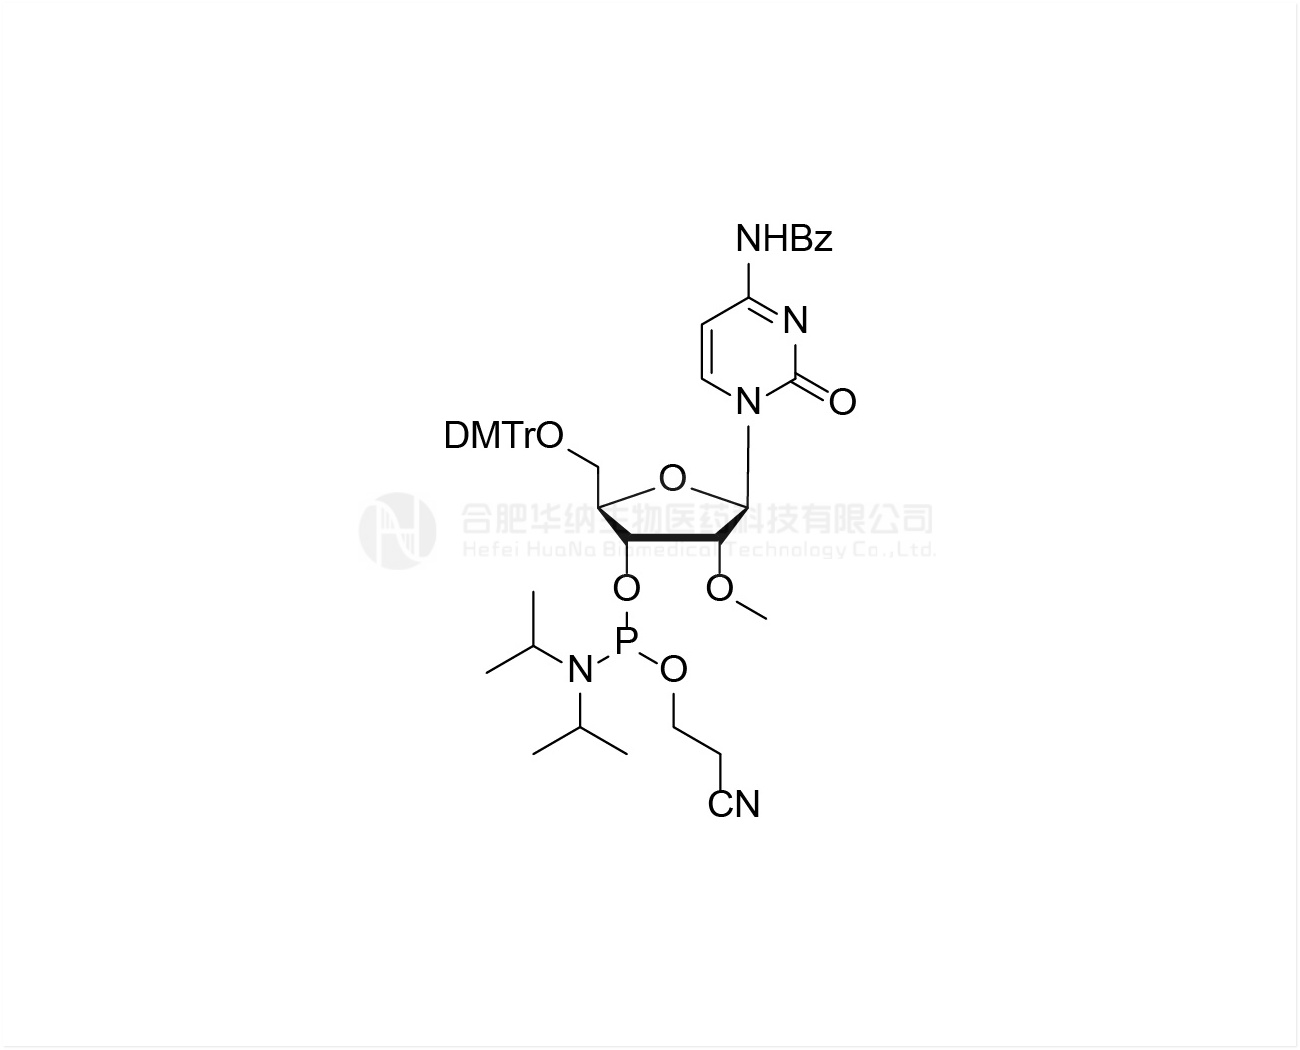 DMTr-2'-O-Me-rC(Bz)-3'-CE Phosphoramidite